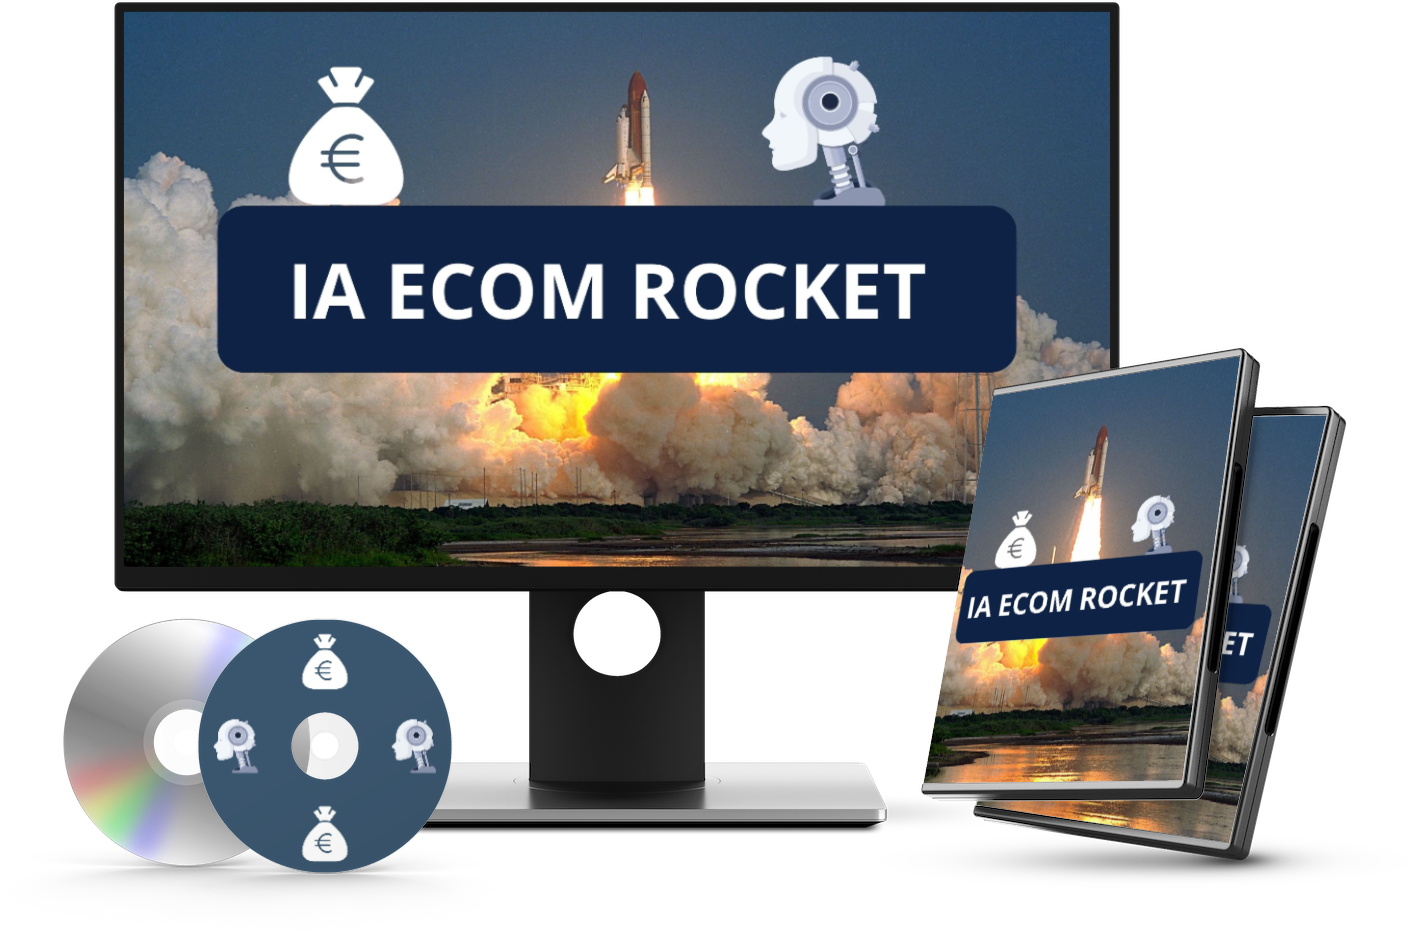 formation ia ecom rocket : Révolutionnez votre E-commerce en y passant 1 heure par jour grâce à l'IA